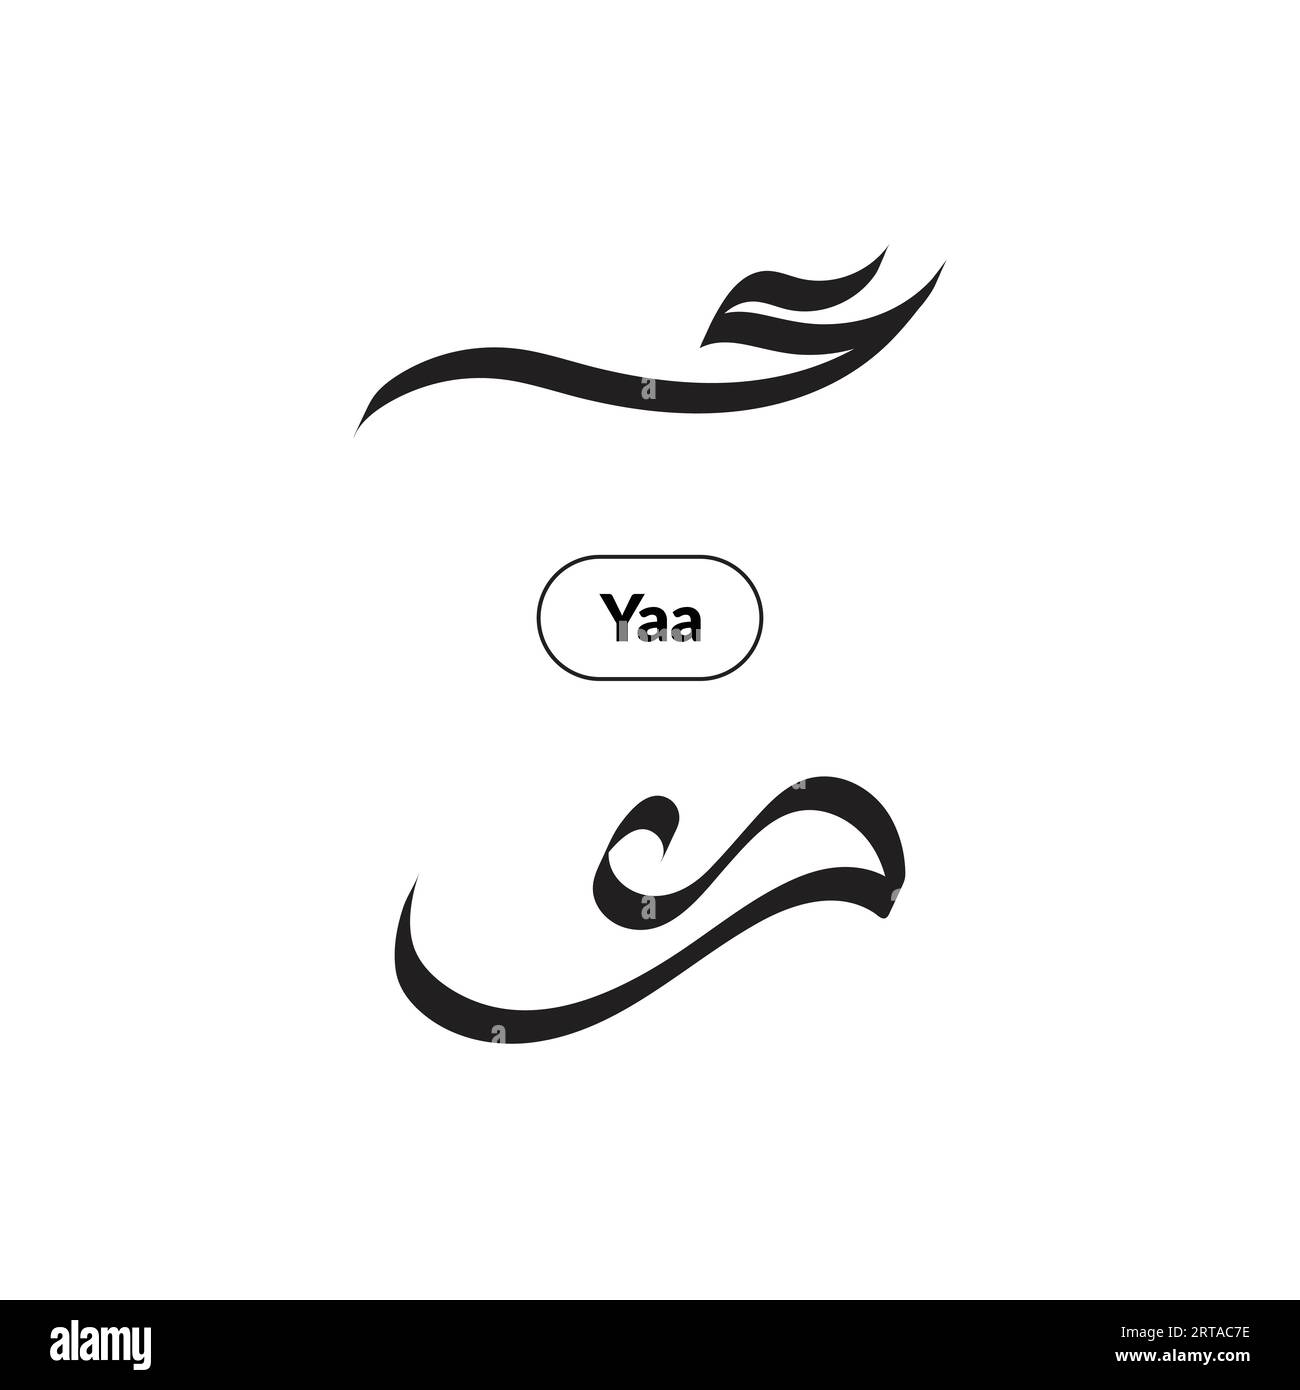 Arabische Kalligraphie im Al-Saif-Stil, Alphabet Yaa in zwei Varianten. Stock Vektor